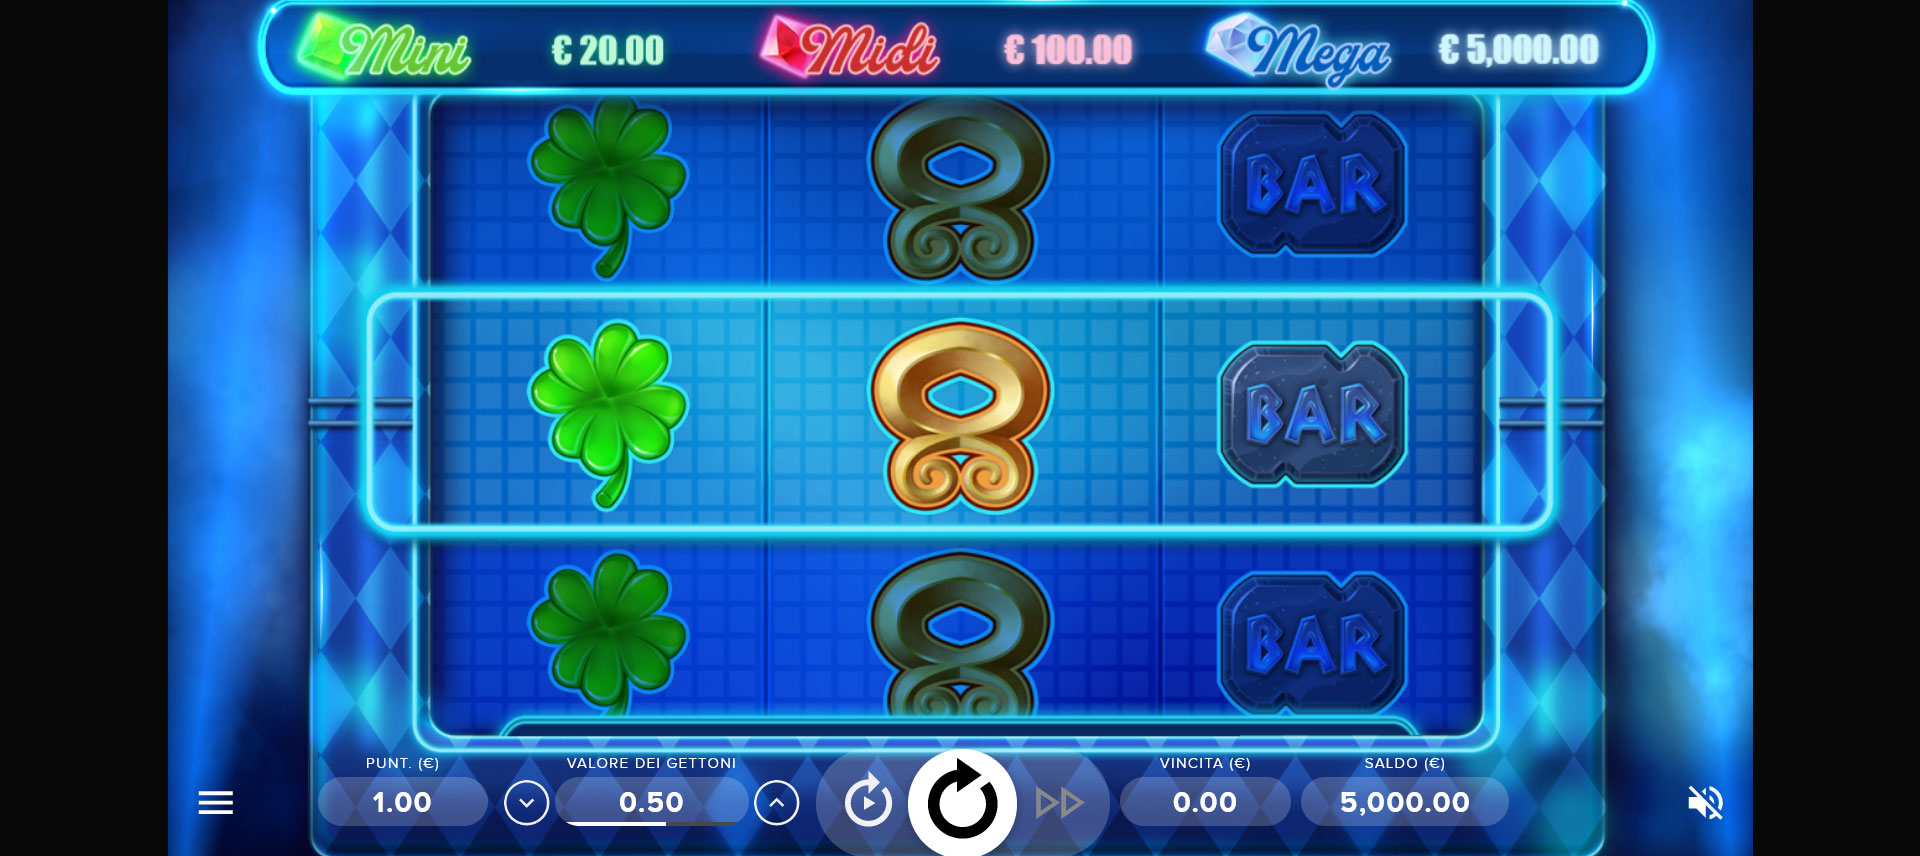 schermata di gioco della slot machine Trollpot 5000